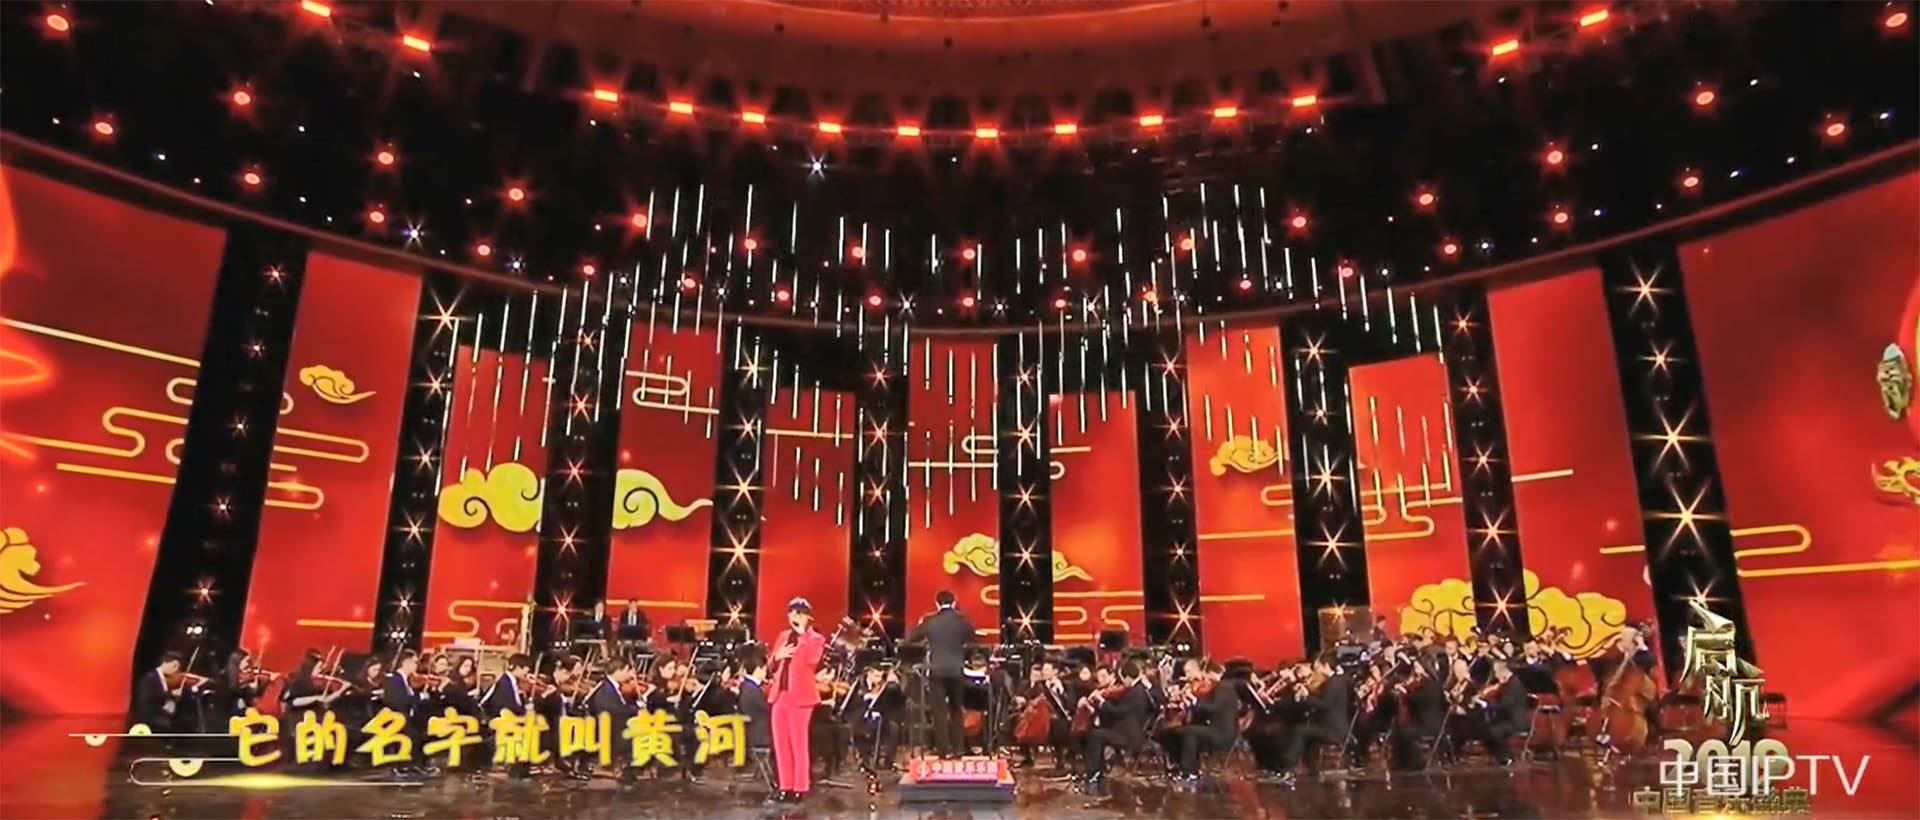 CCTV 1 Program glazbenog festivala 2019. (2)